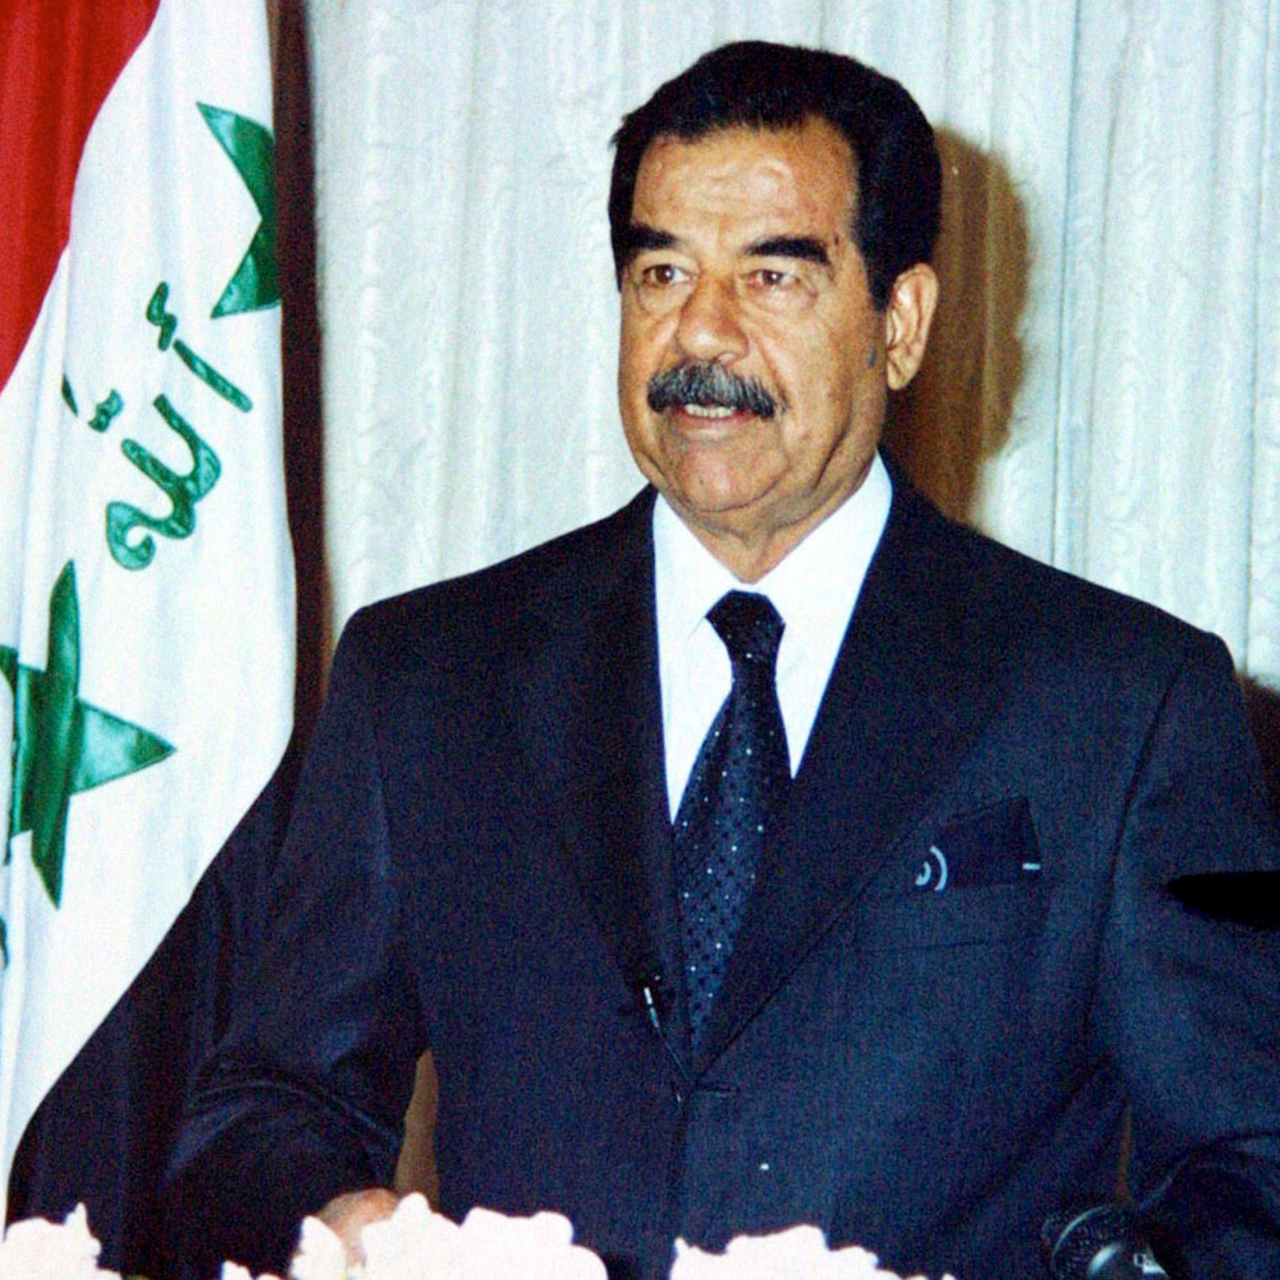 Saddam Hussein enquanto presidente do Iraque, em 2002